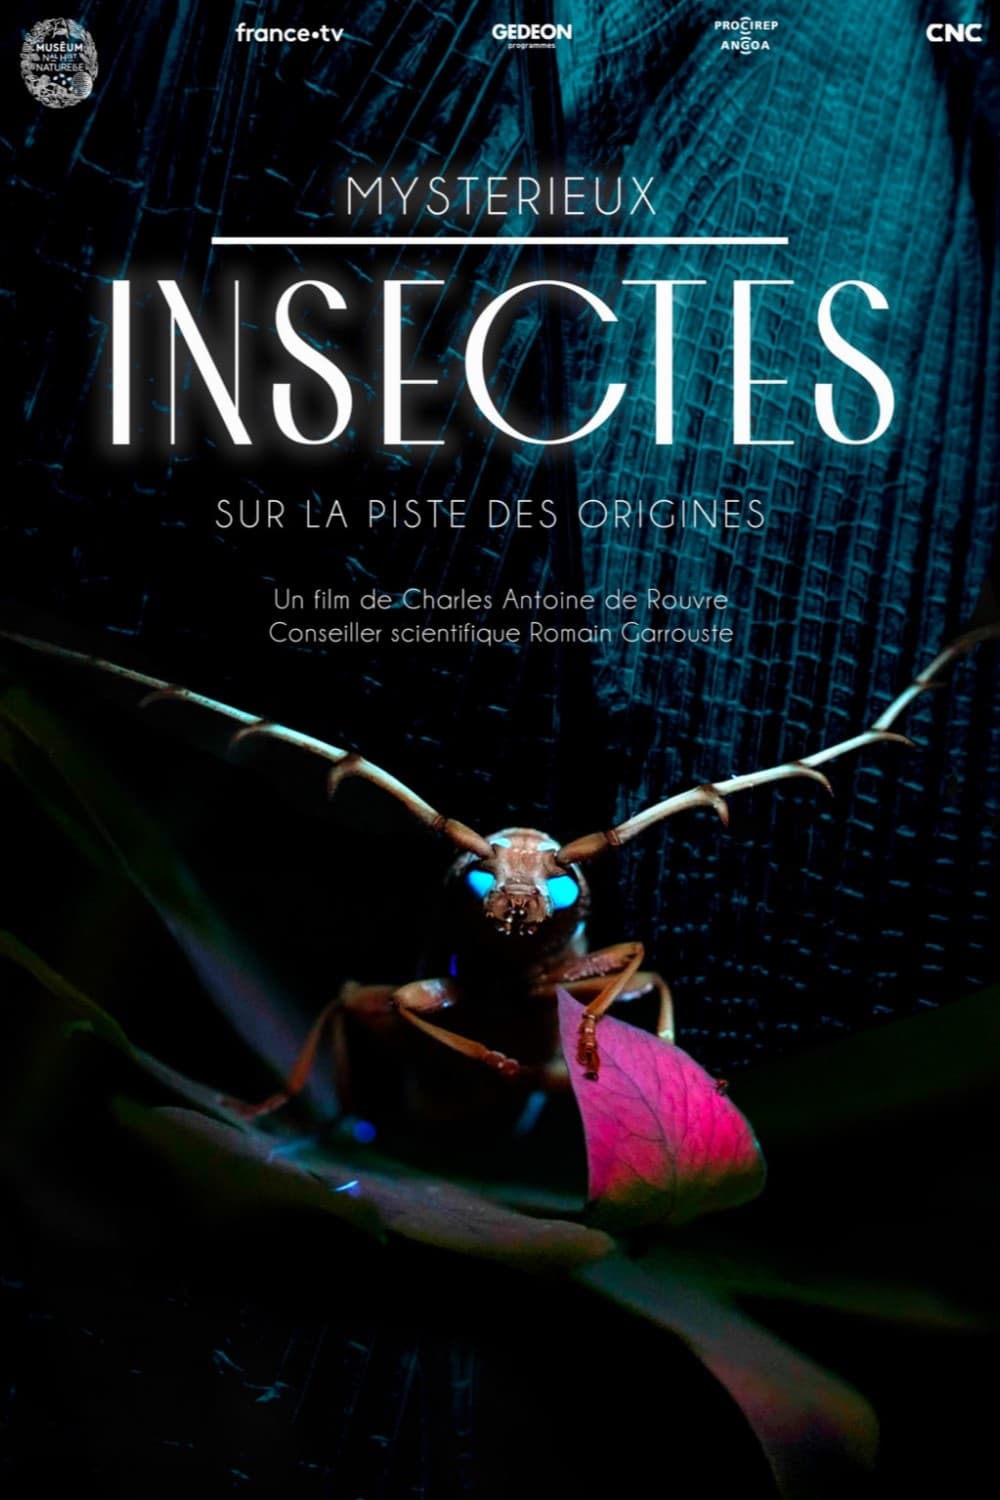 Mystérieux insectes, sur la piste des origines